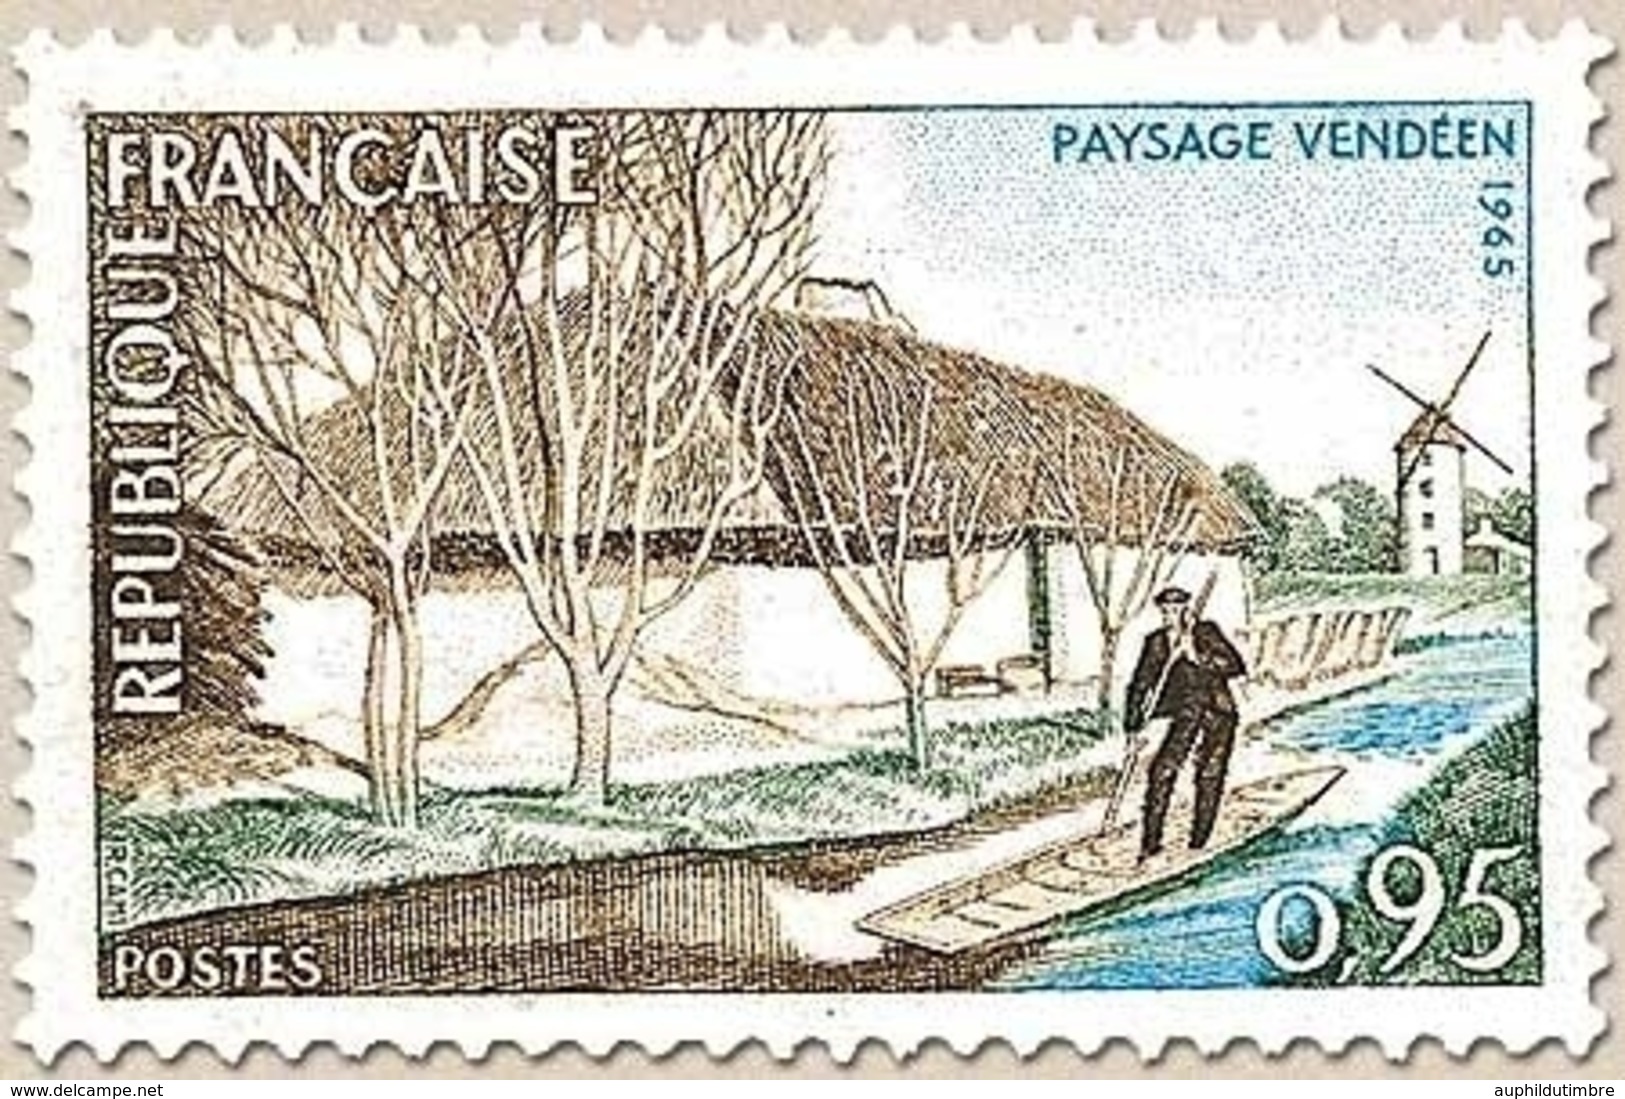 Série Touristique. Paysage Vendéen. 95c. Bistre, Vert Et Bleu Y1439 - Neufs